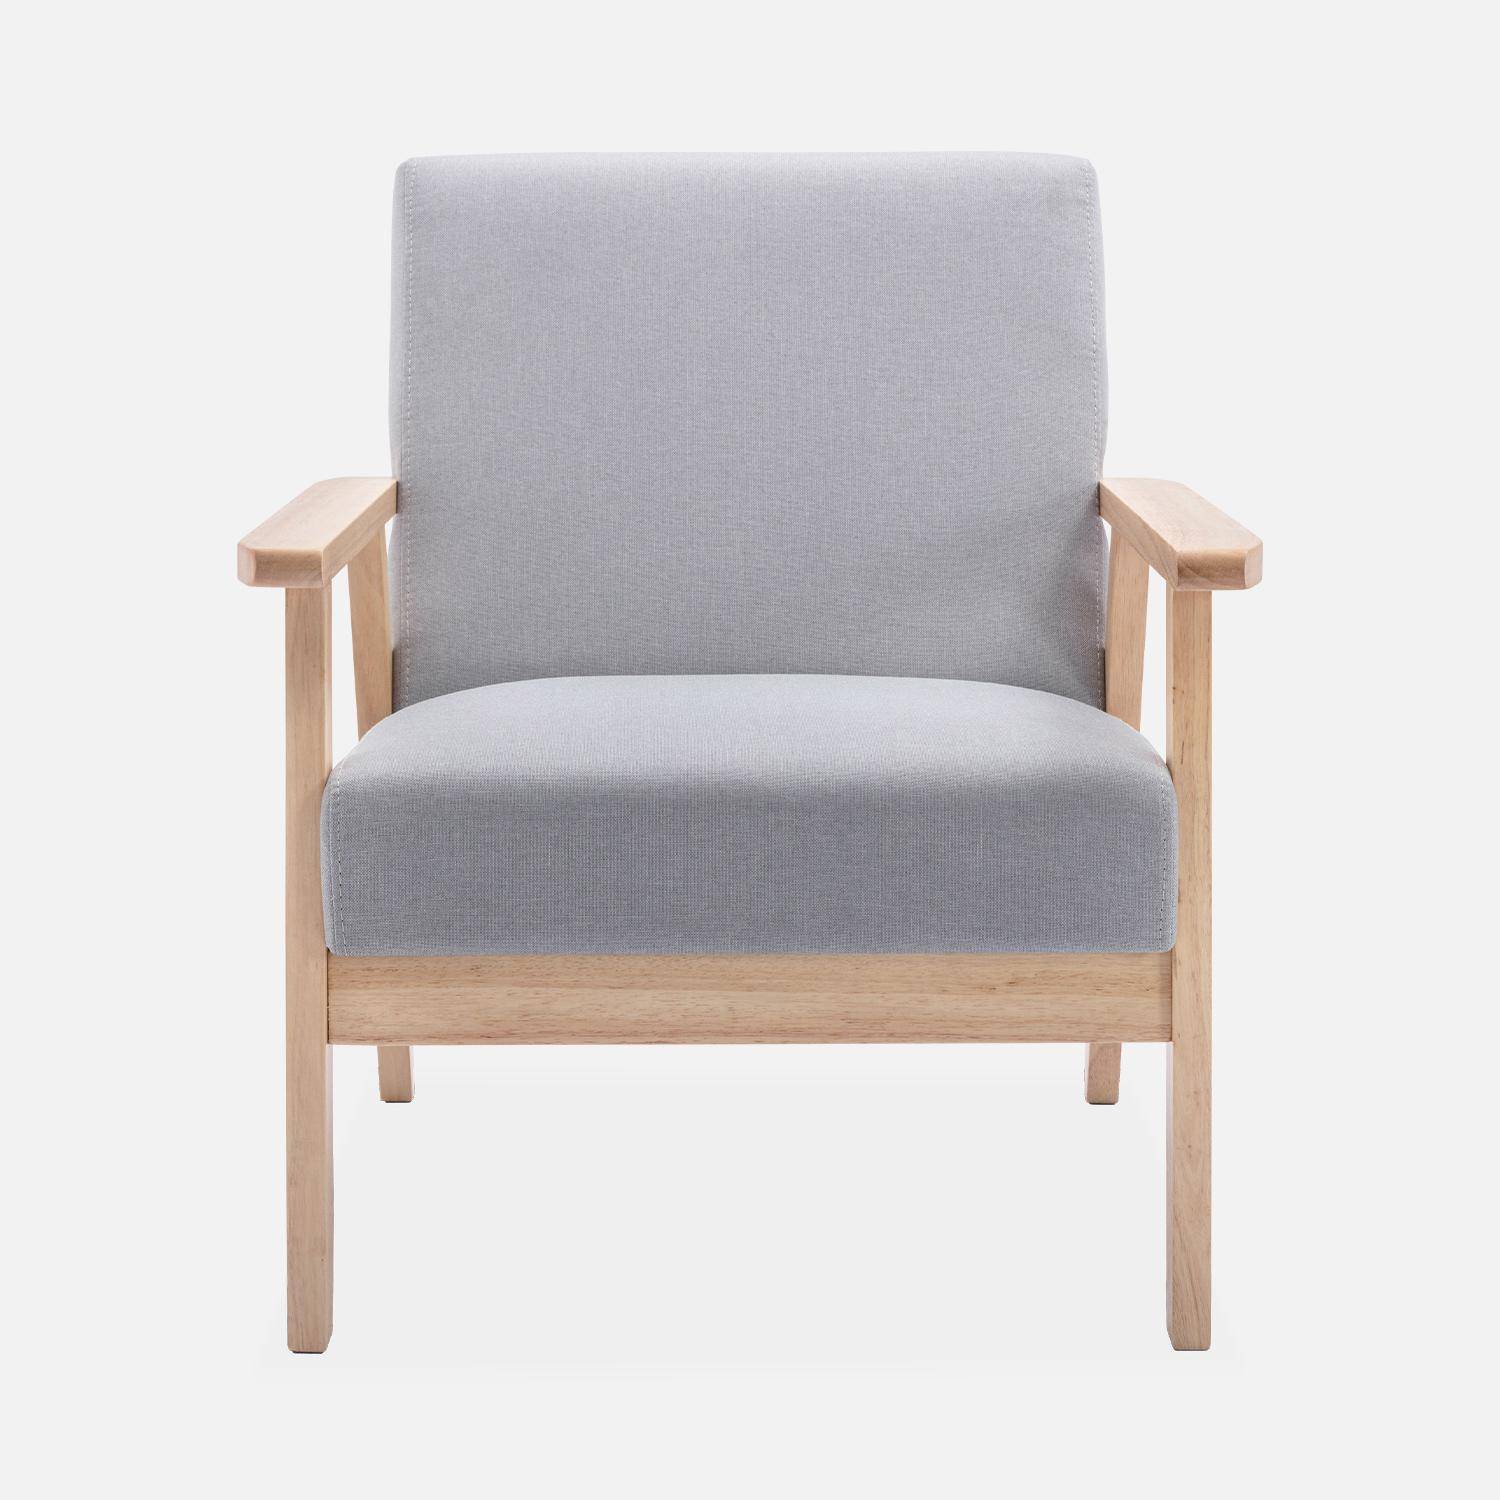 Banco y sillón de madera y tela gris claro, Isak, L 114 x A 69,5 x A 73 cm Photo5